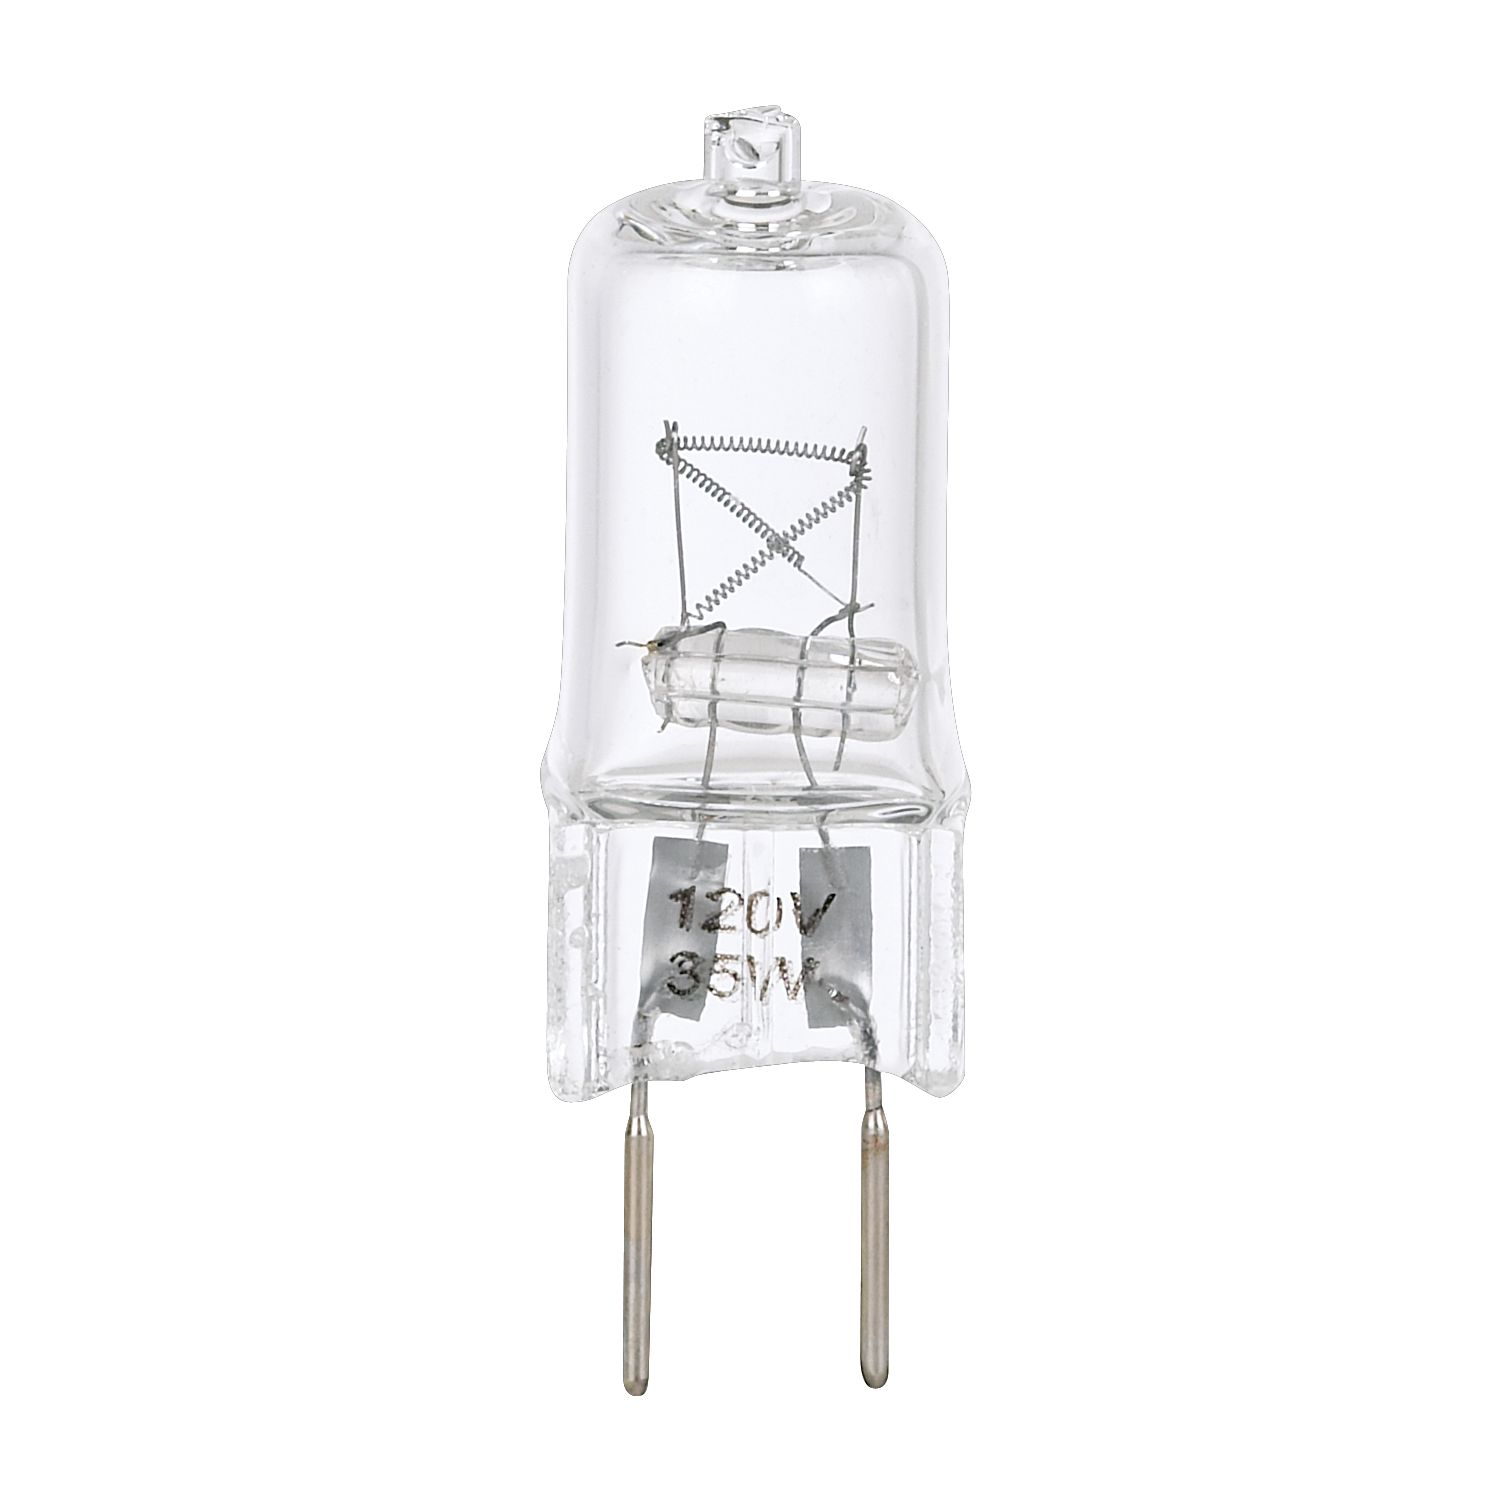 35 Watt 120-Volt Bi-Pin Halogen G8 Light Bulb